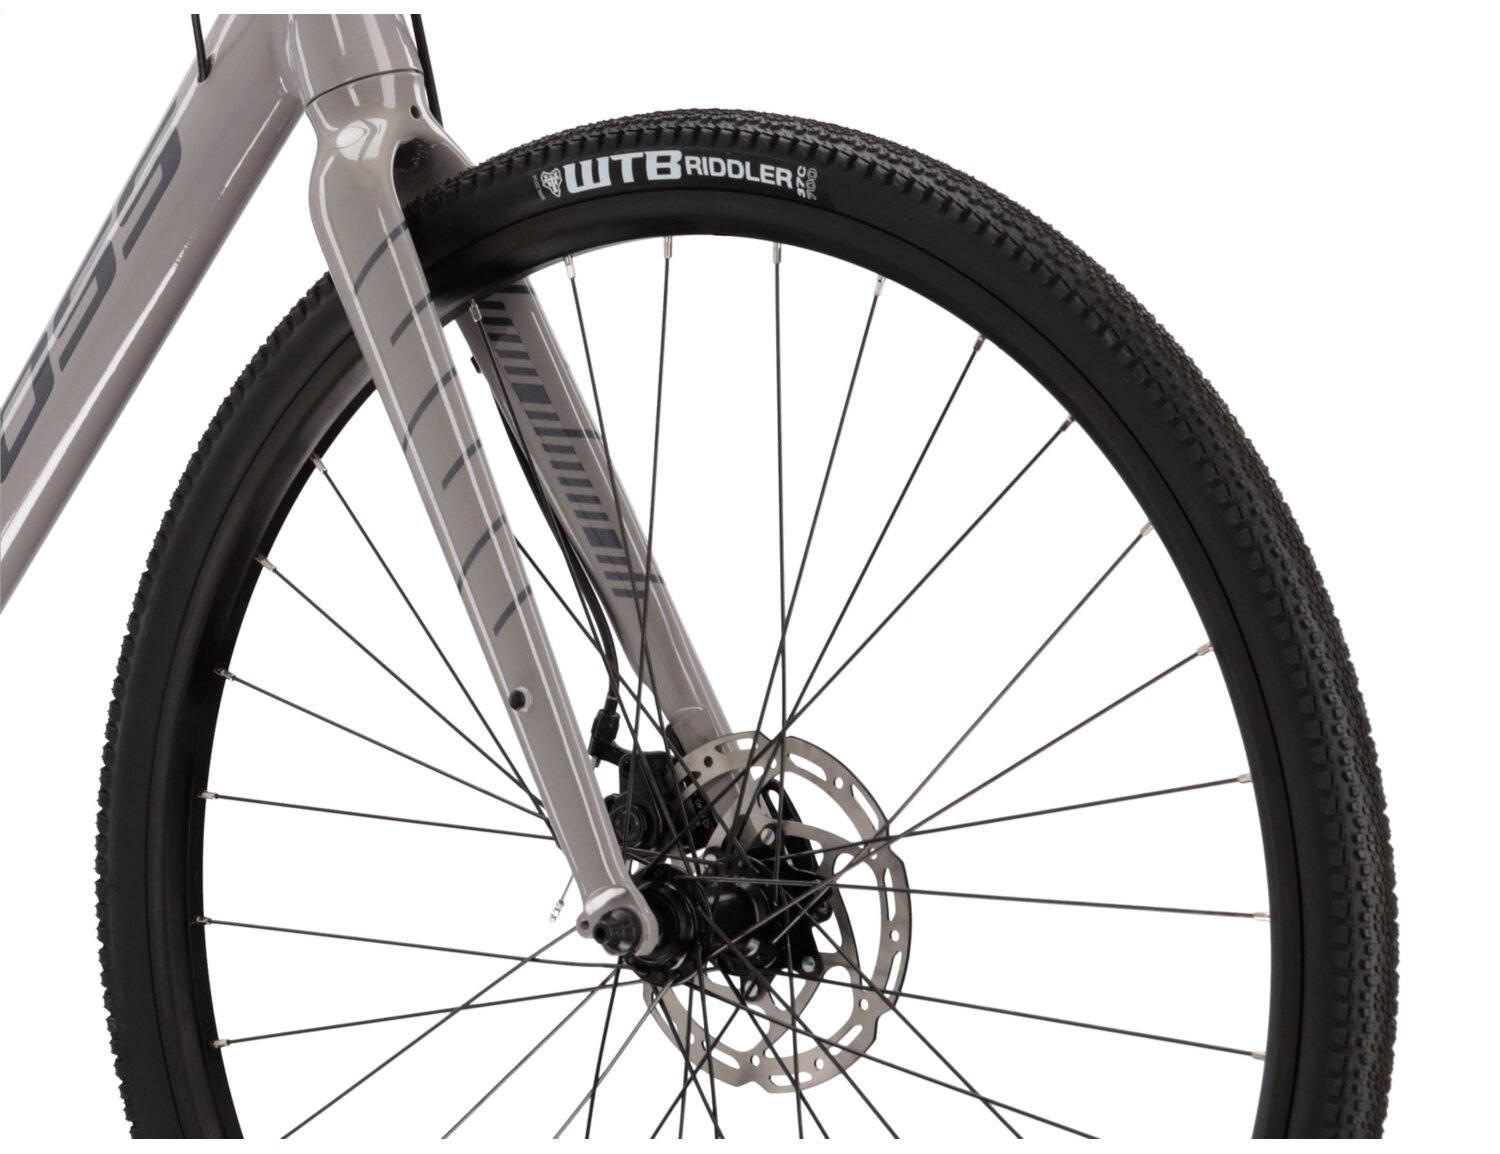  Aluminiowa rama, sztywny aluminiowy widelec oraz opony WTB Riddler w rowerze gravelowym KROSS Esker 1.0 